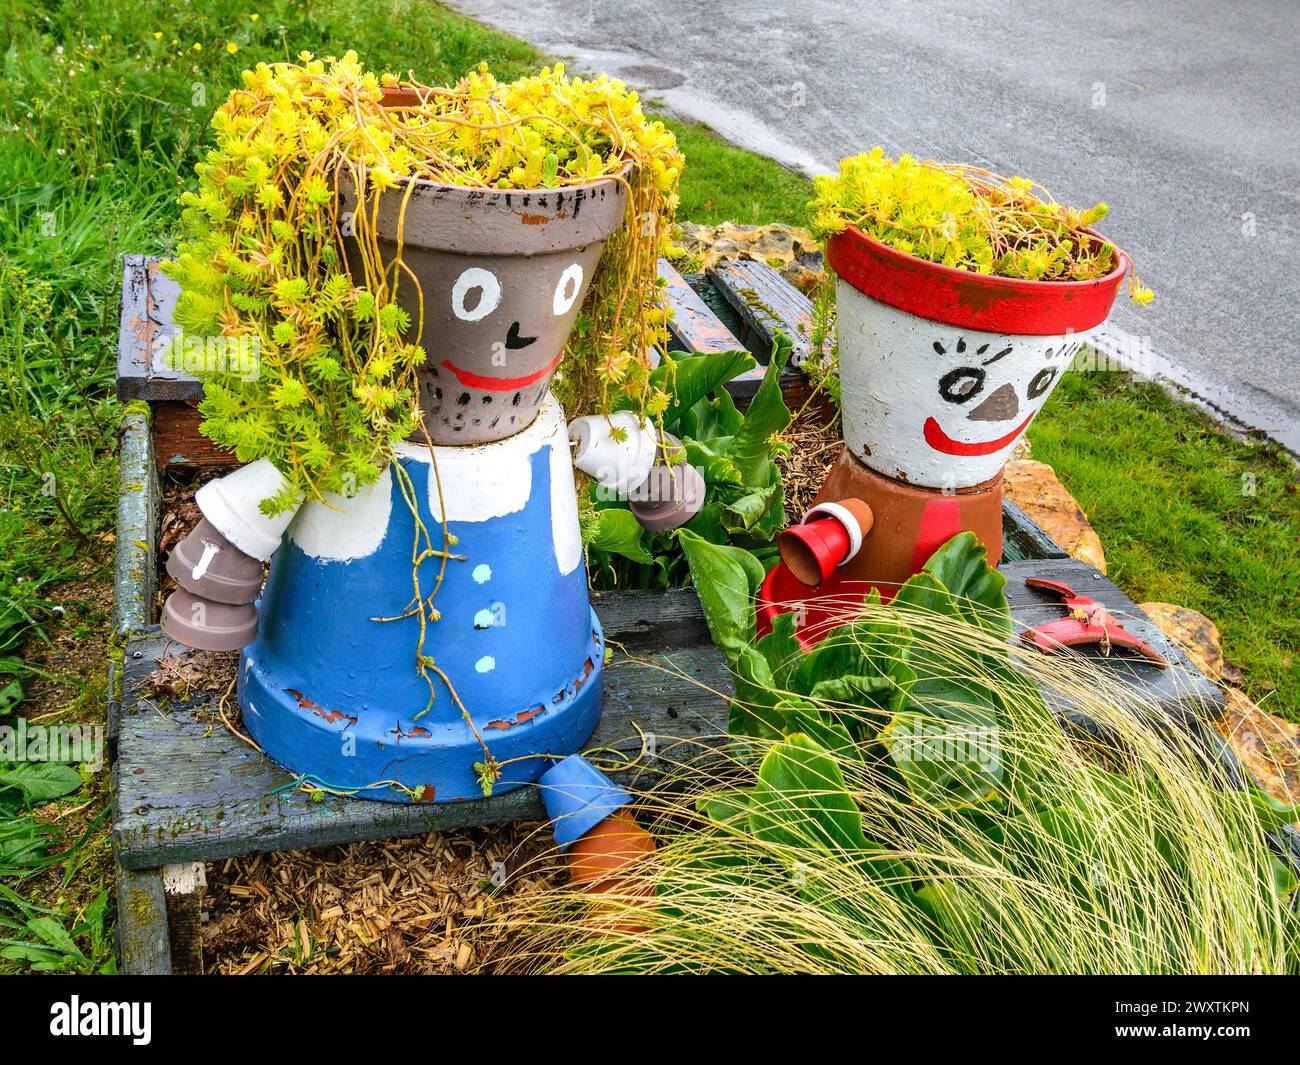 Version ornementale française en bord de route de Bill et Ben les hommes en pot de fleurs - Yzeures-sur-creuse, Indre-et-Loire (37), France. Banque D'Images